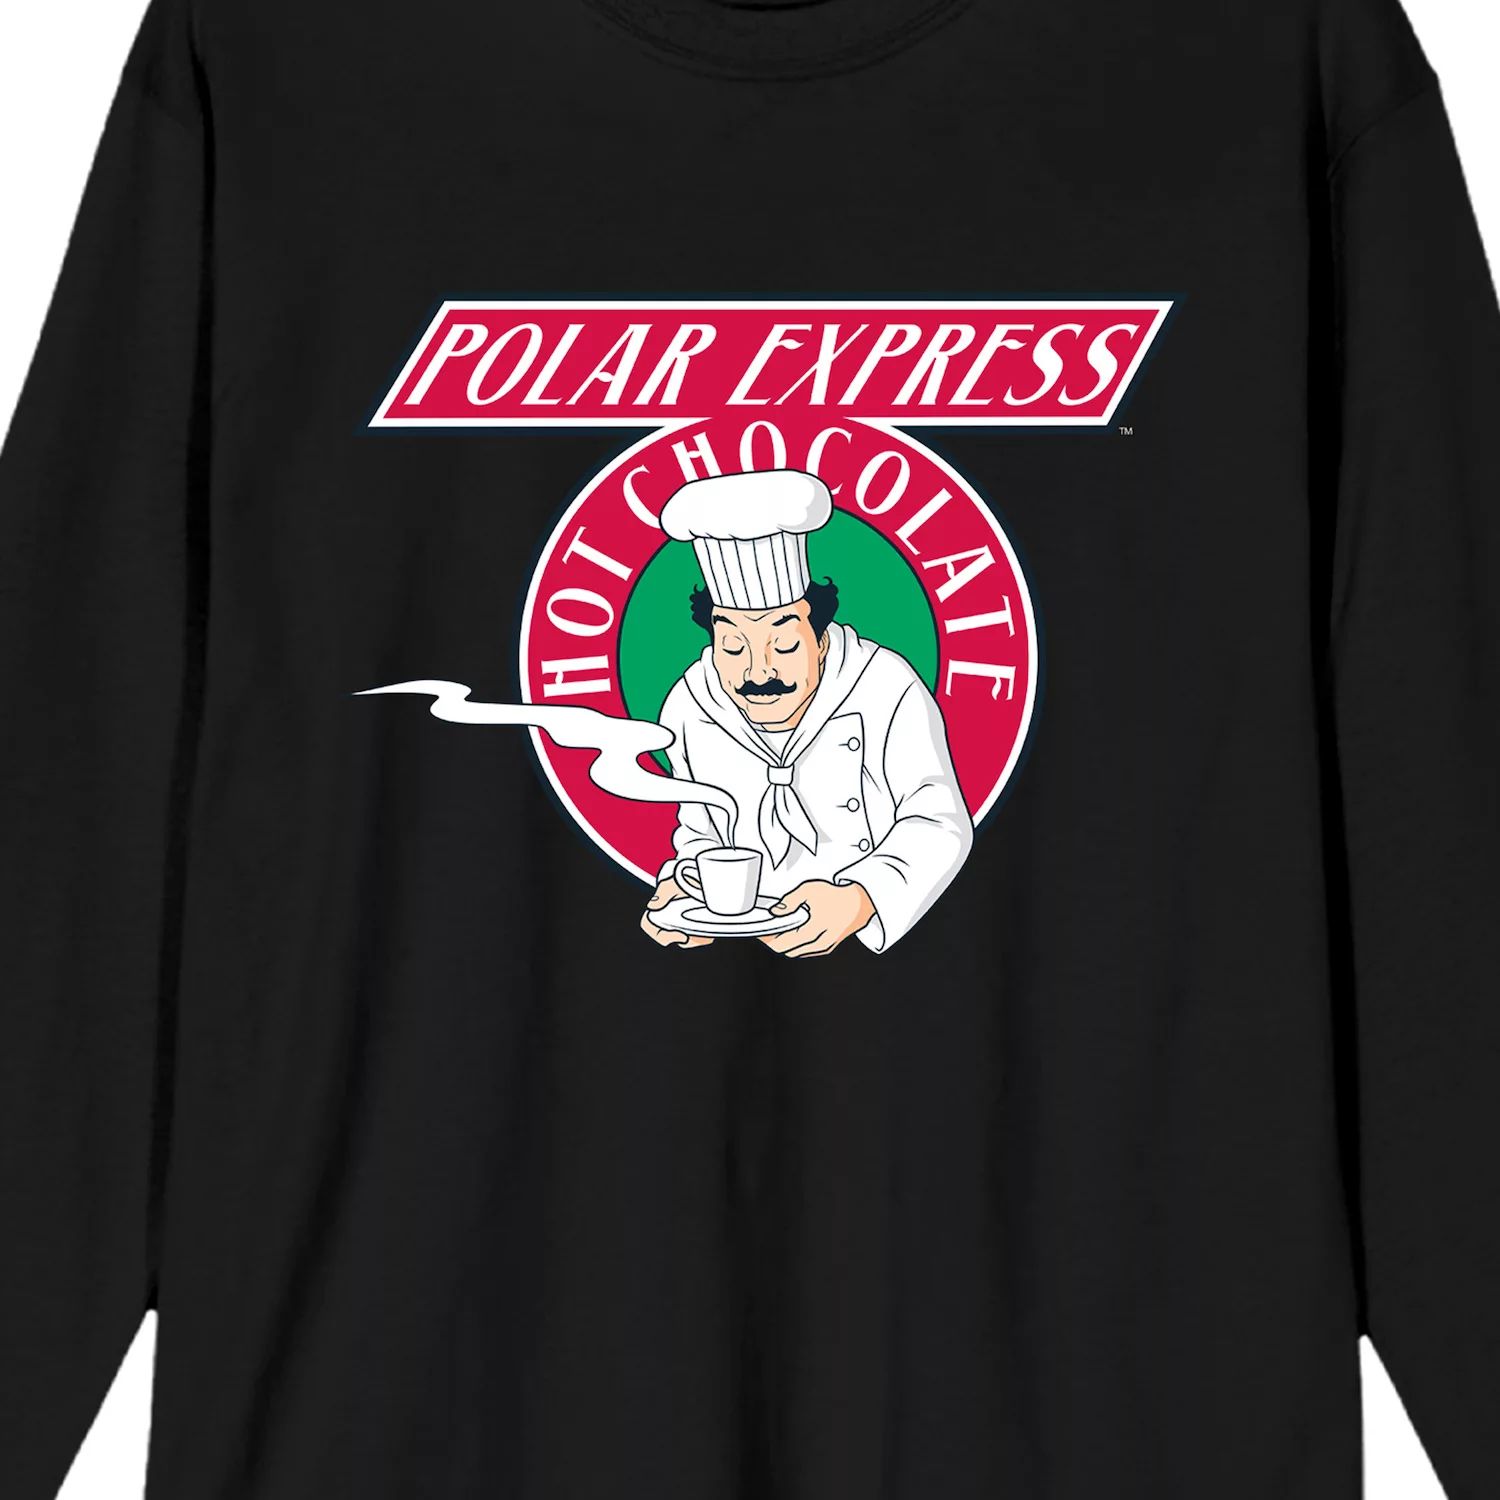 мужская футболка polar express santas sleigh licensed character Мужская футболка с длинными рукавами Polar Express Hot Chocolate Licensed Character